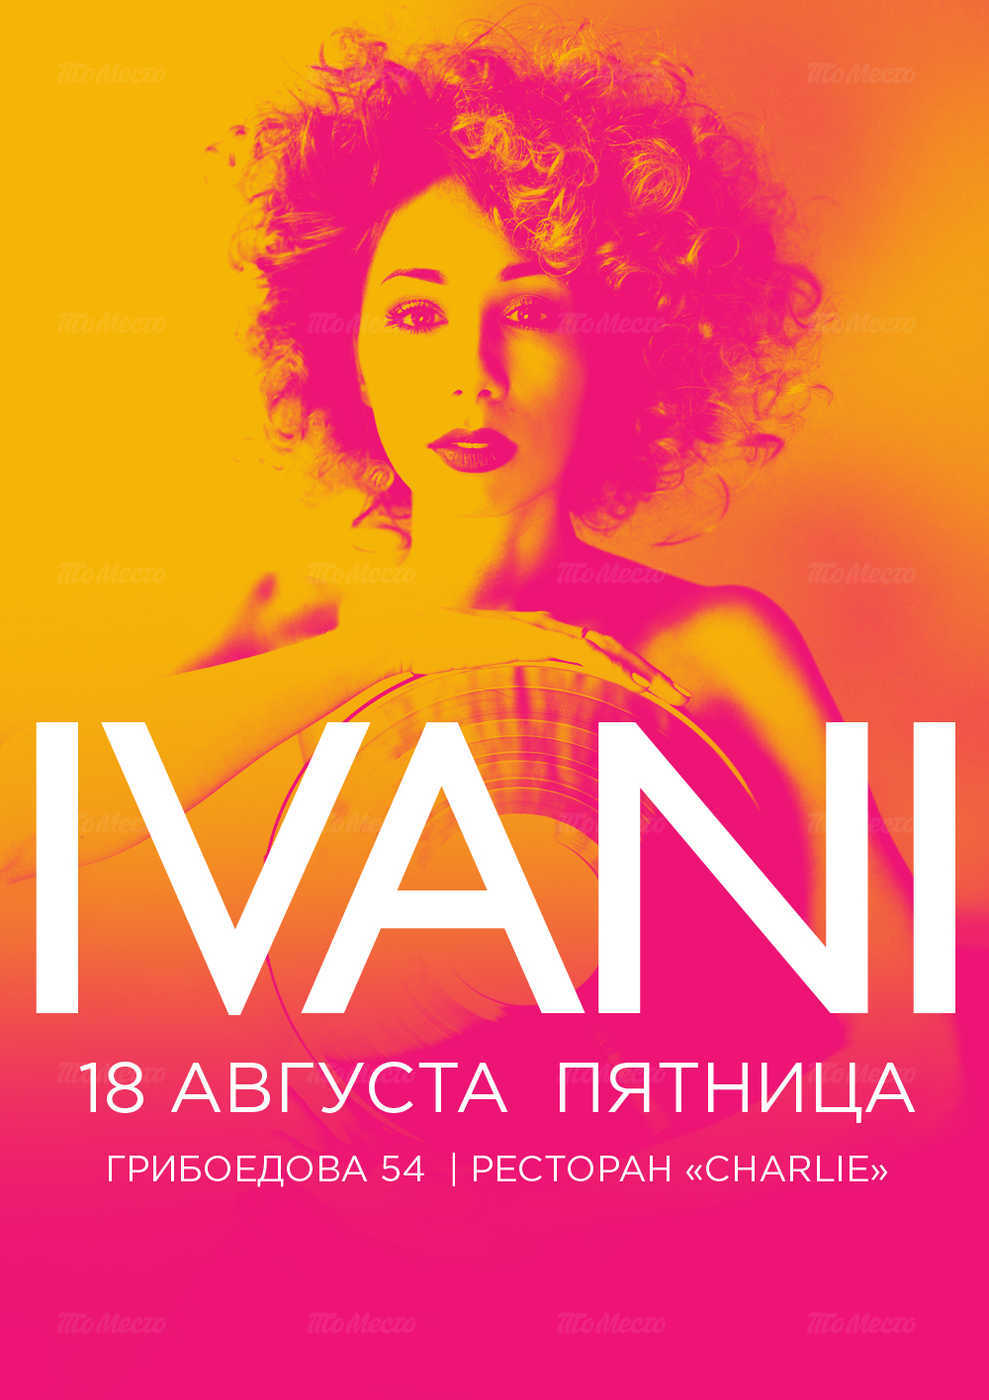 Проект певицы и актрисы Анны Иваниной — IVANI